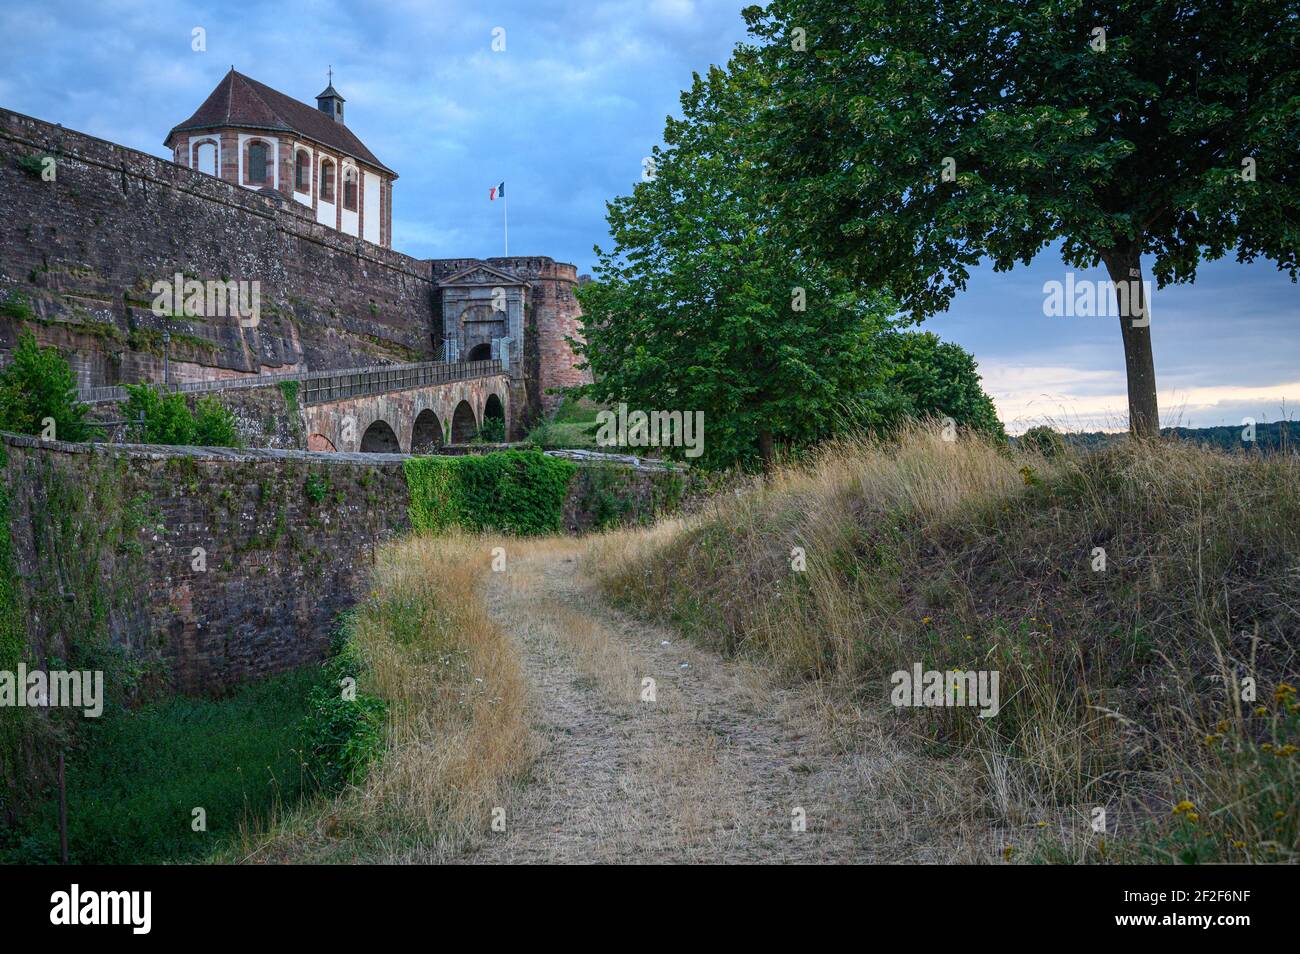 Percorso che conduce alla fortezza storica su collina. Mura alte e forti a difesa Cittadella di Bitche, Mosella, Francia. Foto Stock